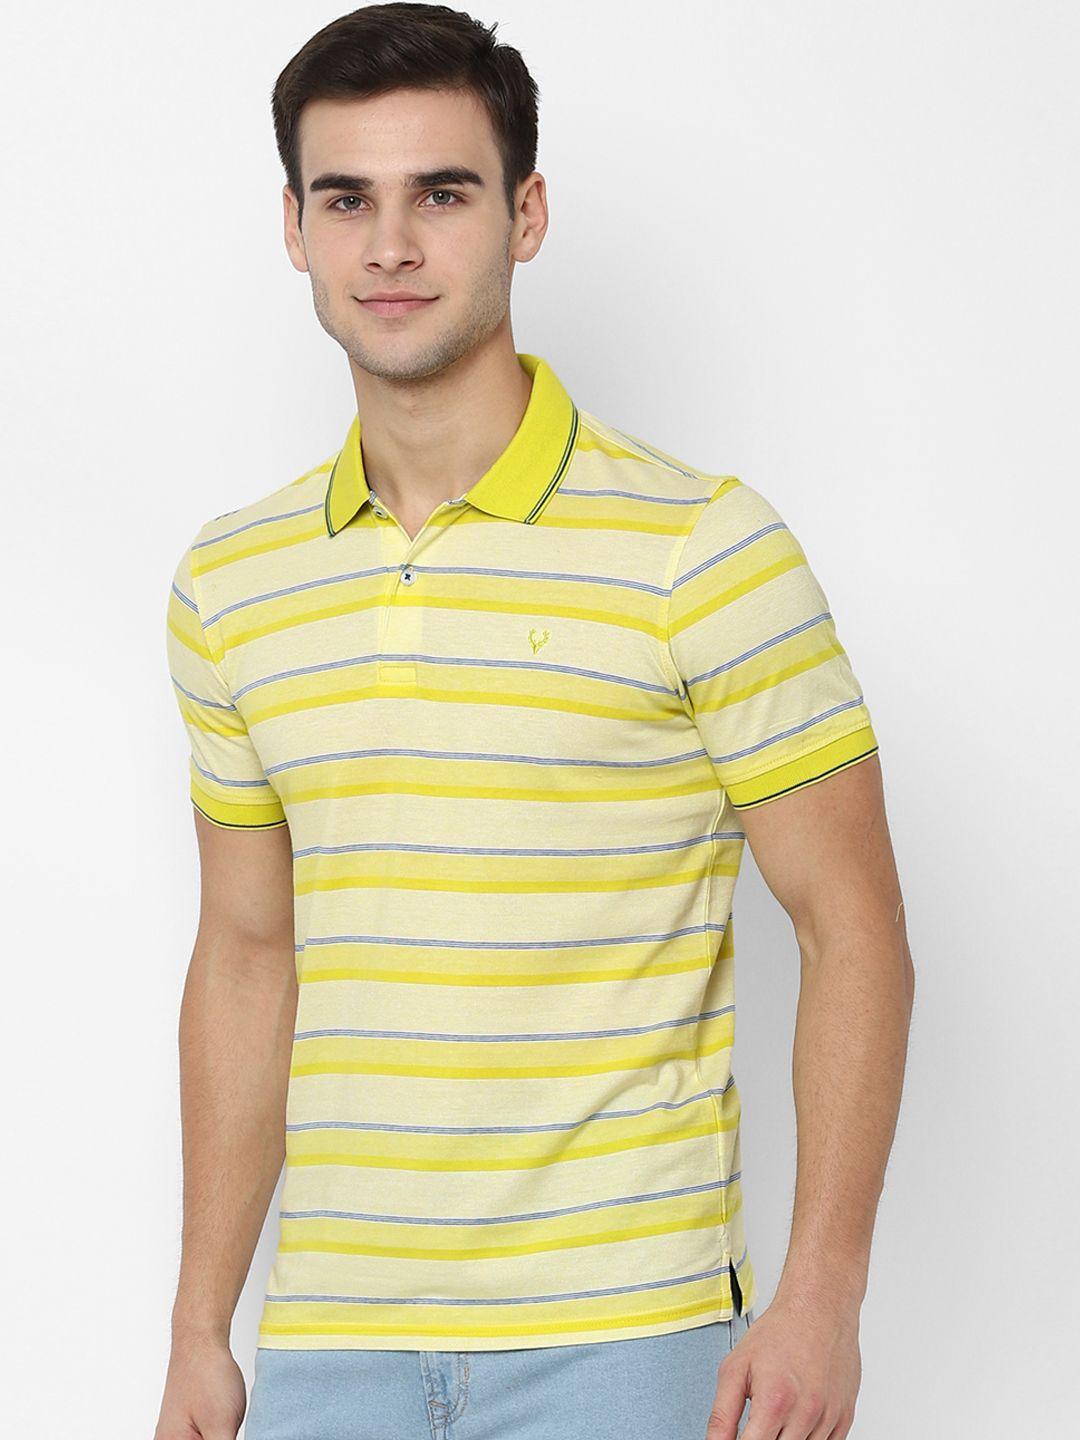 allen-solly-men-yellow-striped-polo-collar-t-shirt